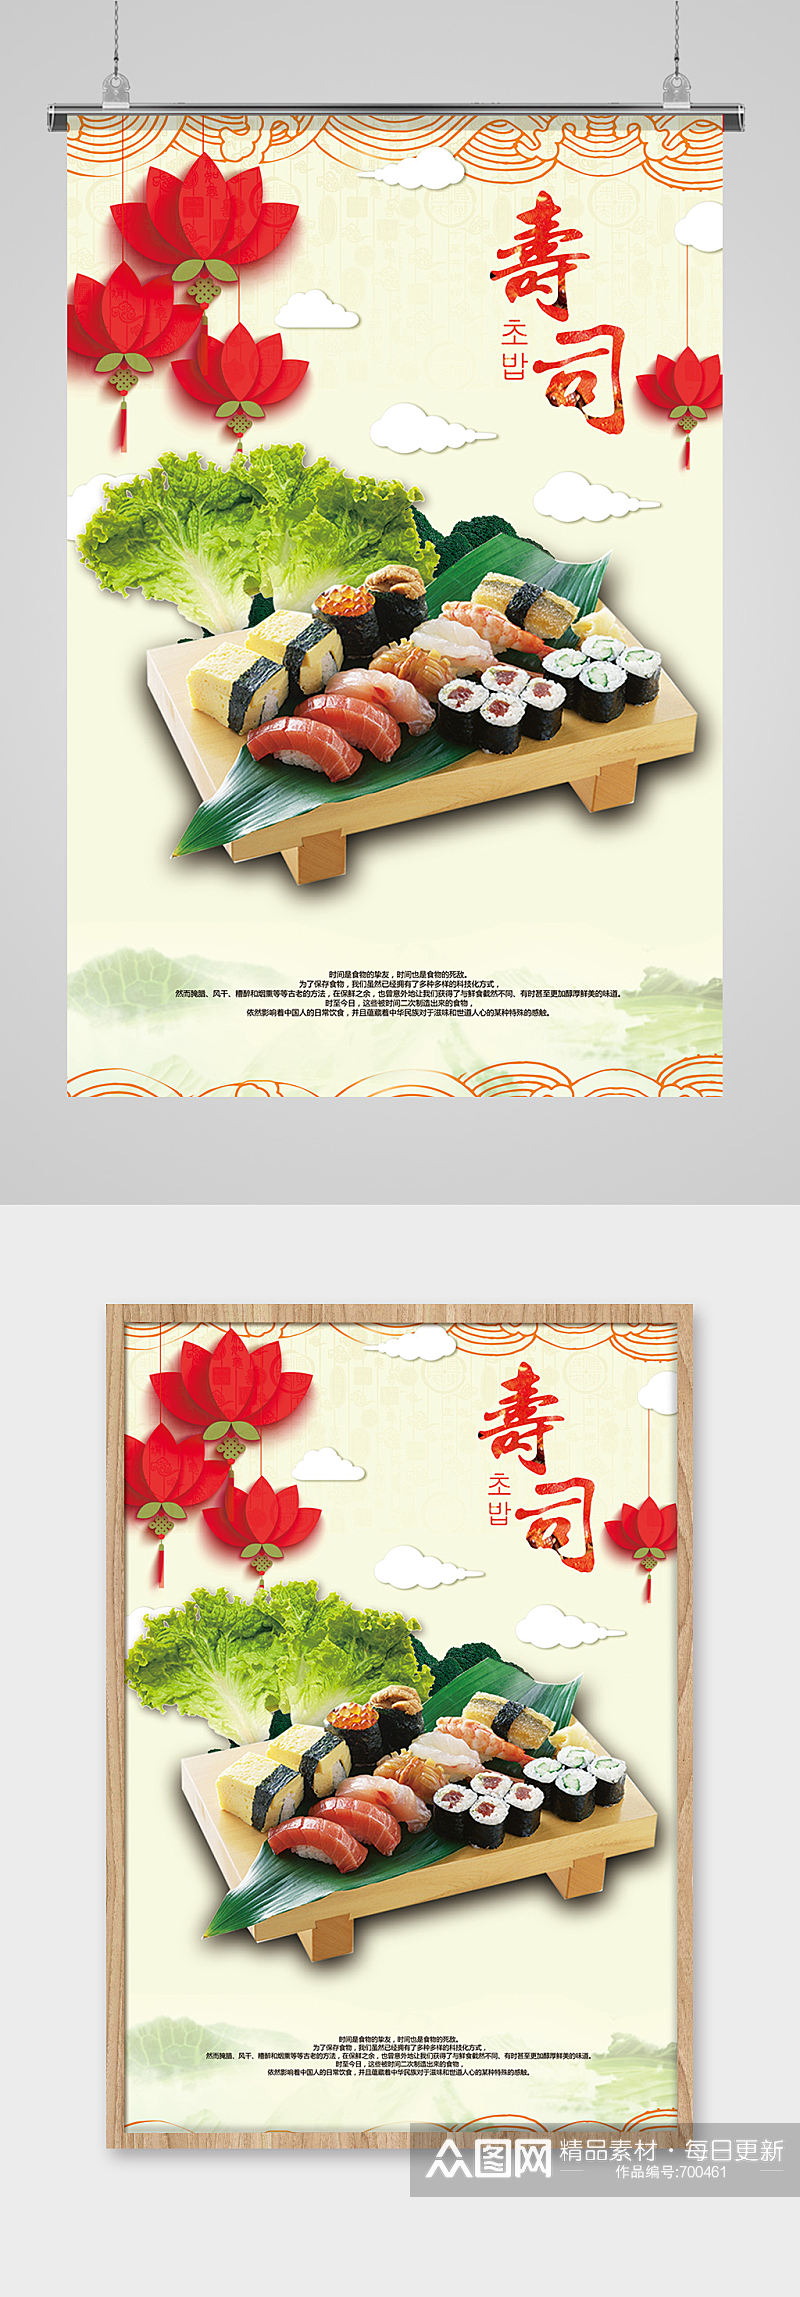 美味寿司料理餐饮海报设计素材